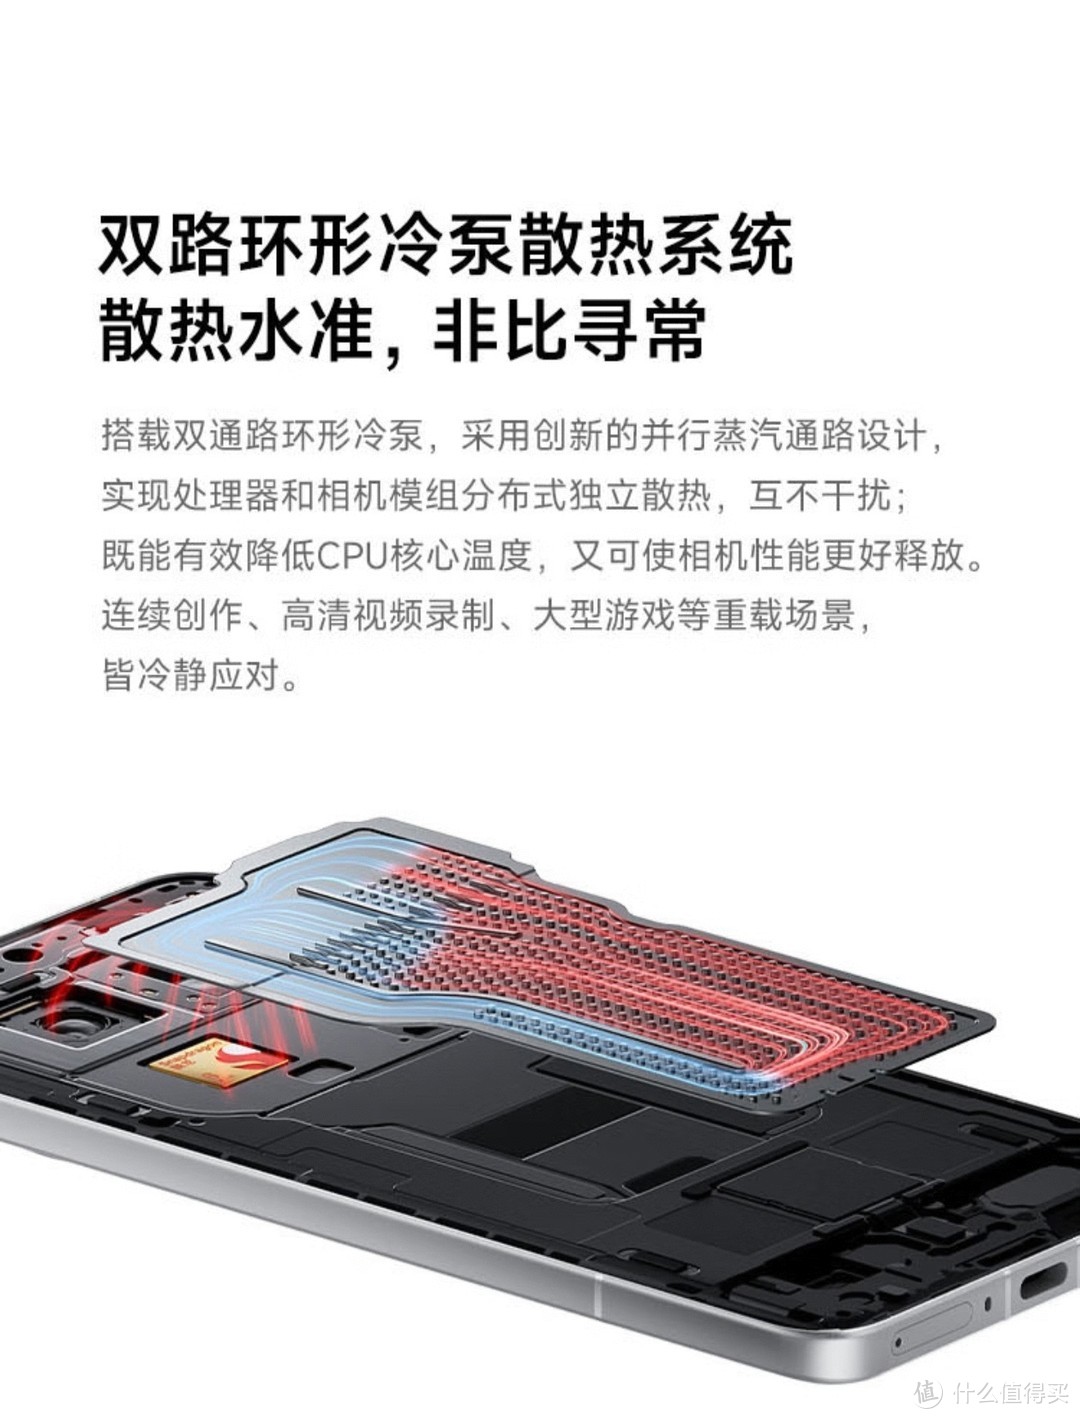 小米Xiaomi 14Ultra 徕卡光学Summilux镜头 大师人像 双向卫星通信 小米澎湃OS 16+512 黑色 5g手机